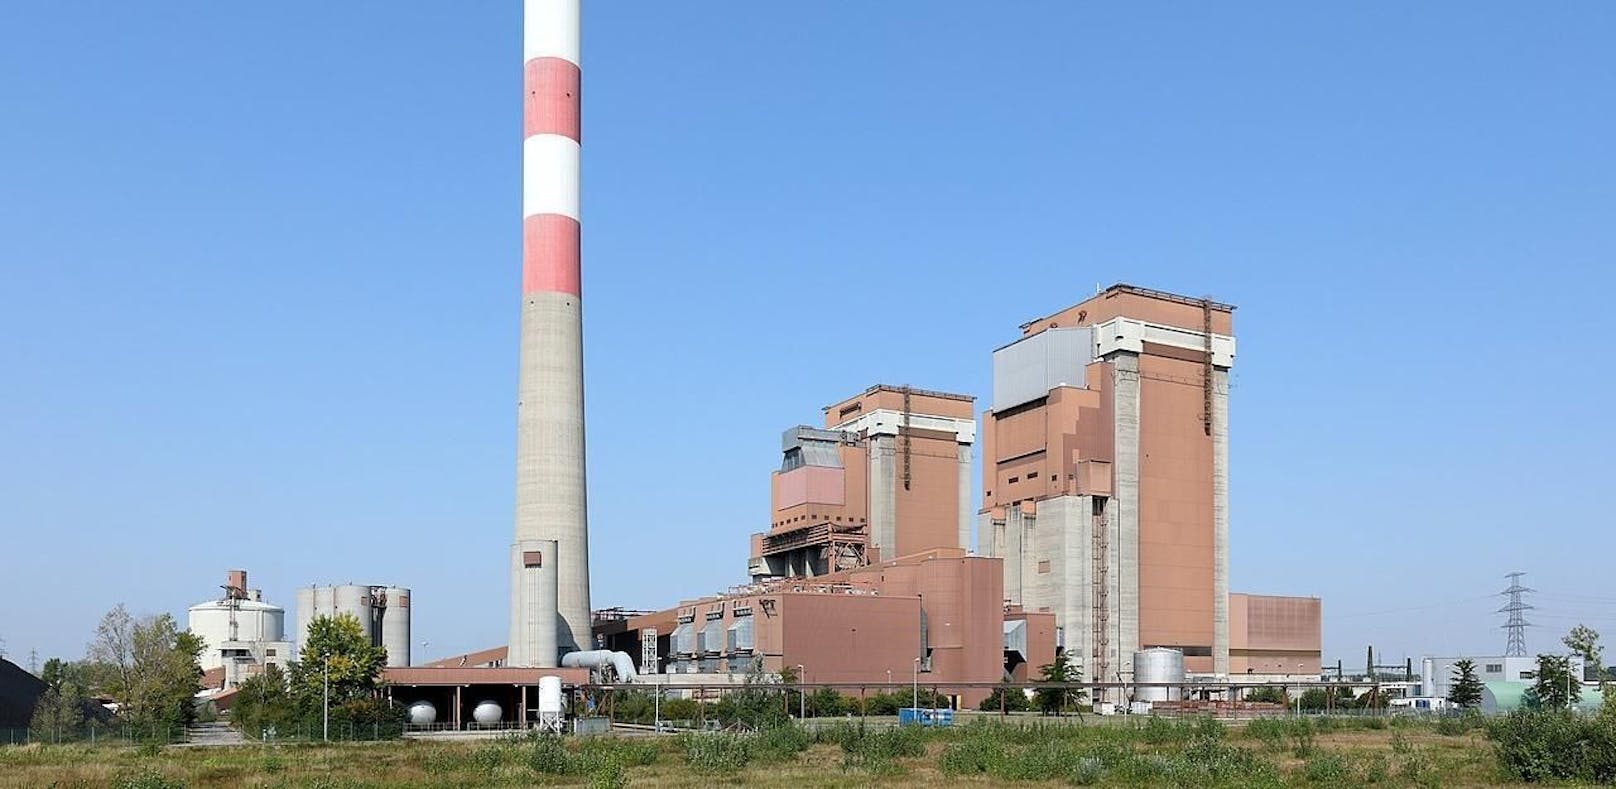 EVN beendet die Kohleverstromung am Standort Dürnrohr noch im Herbst 2019.